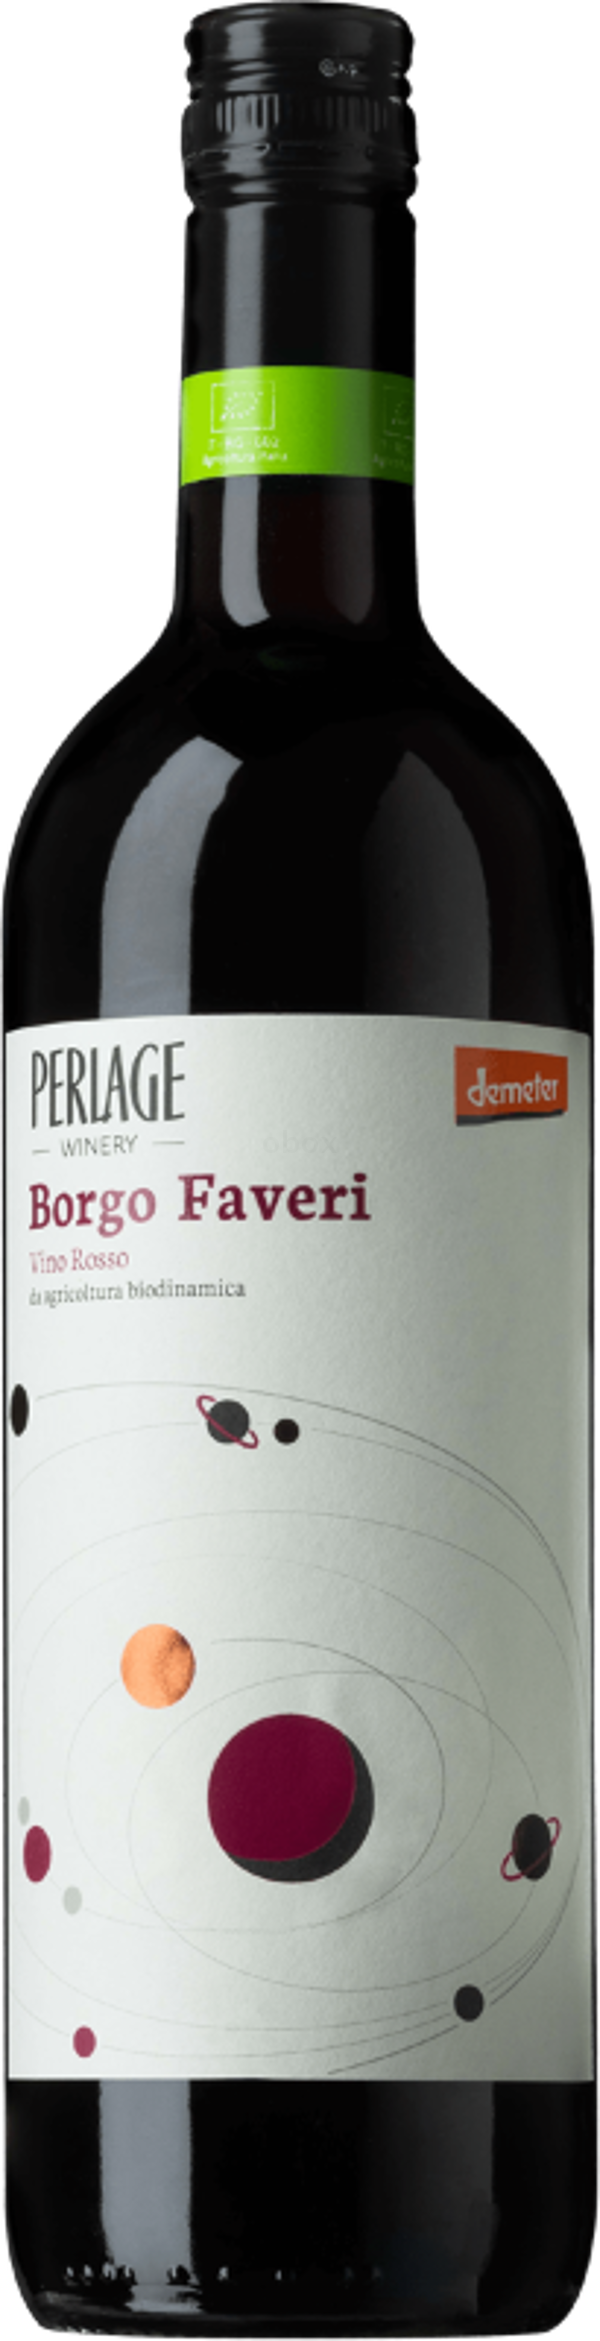 Produktfoto zu Borgo Faveri rot, 0,75 l